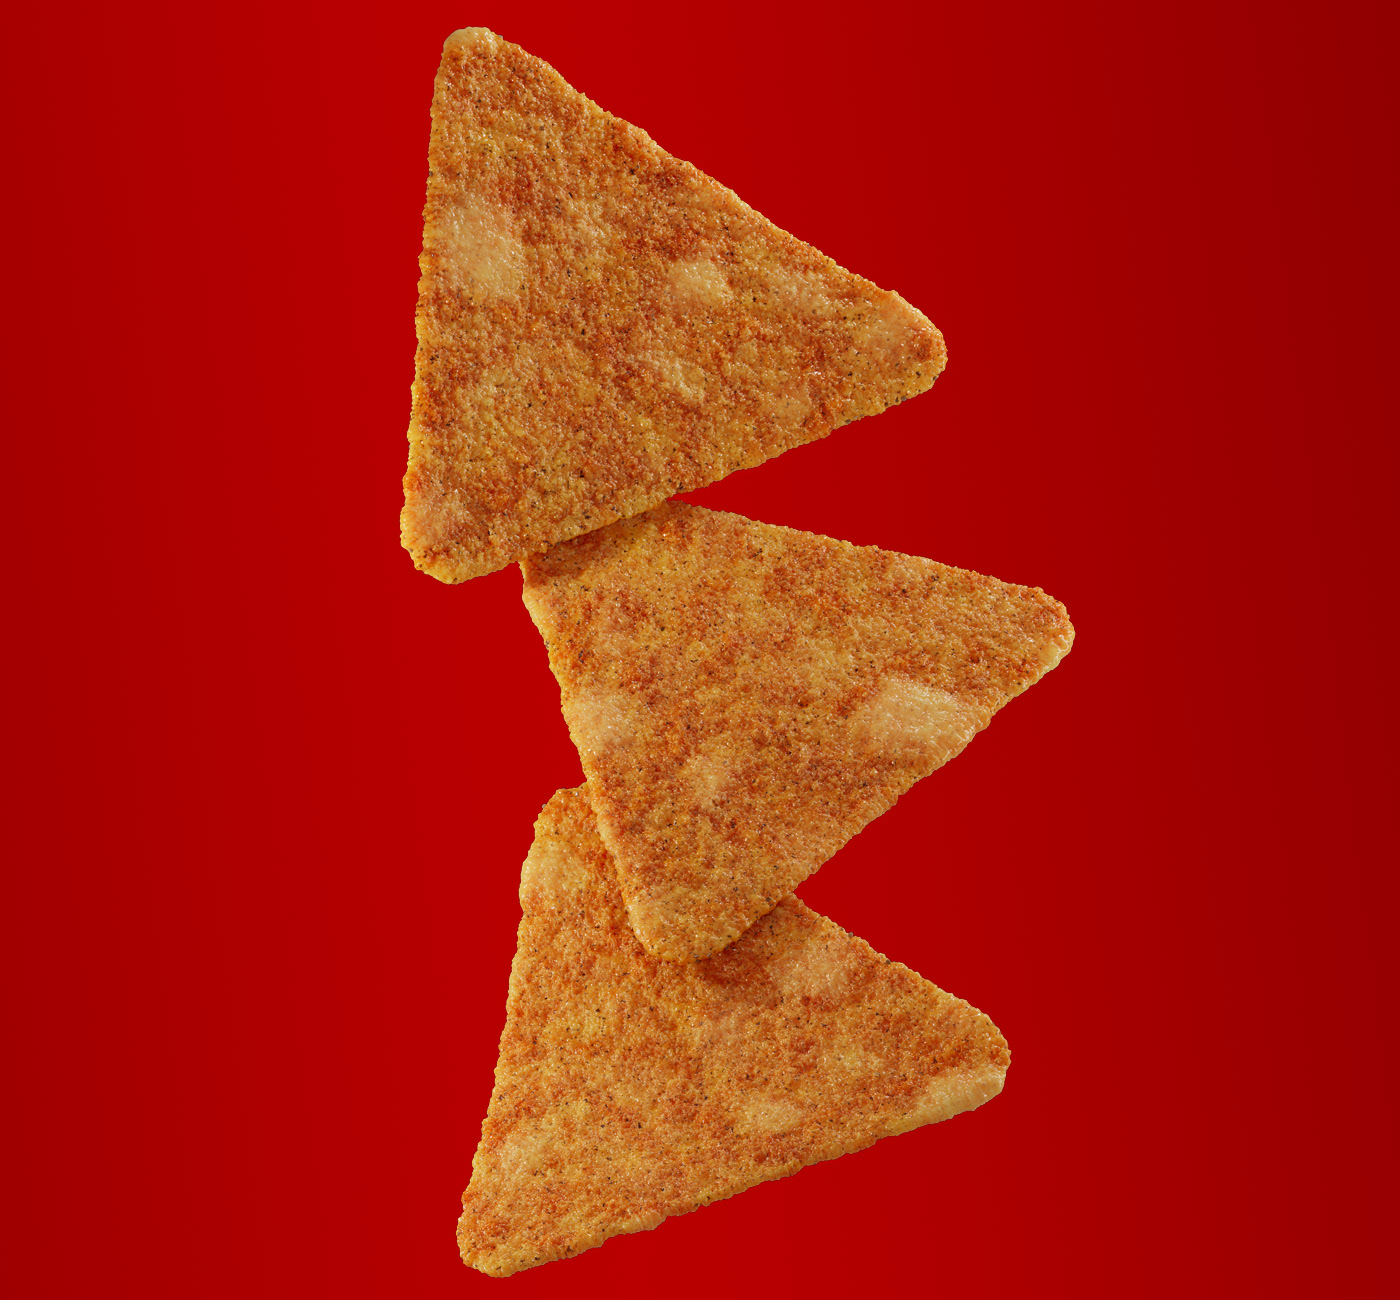 Chips Snacks Packaging Illustration Food Jackson Boss